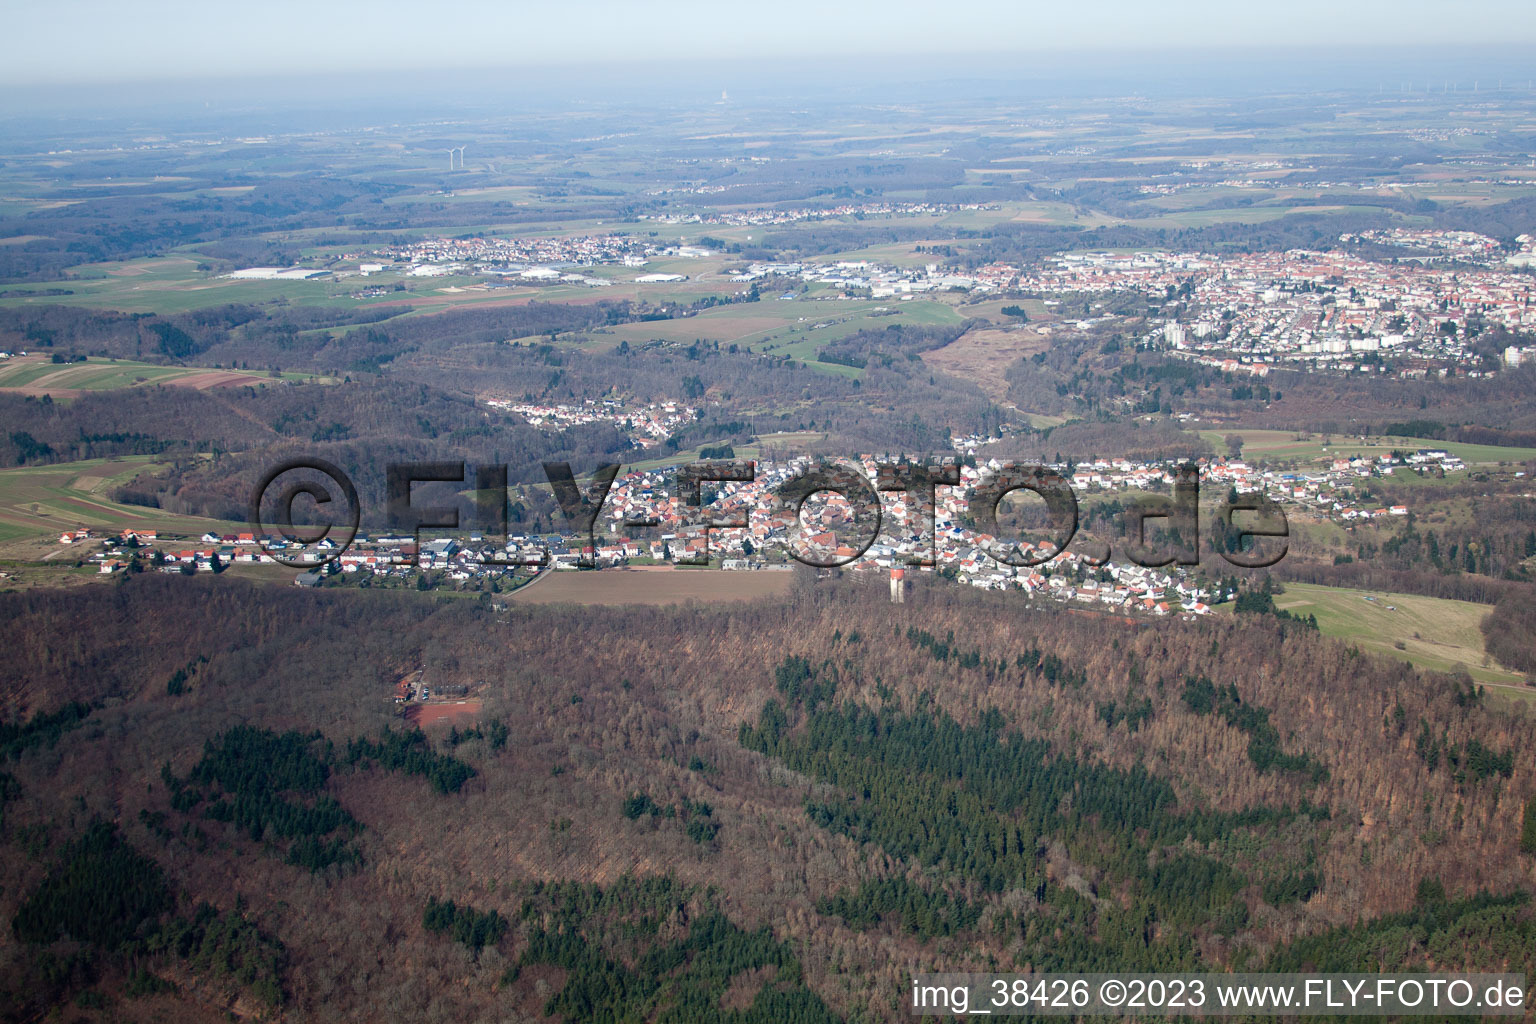 Vue aérienne de Ludwigsthal dans le département Rhénanie-Palatinat, Allemagne